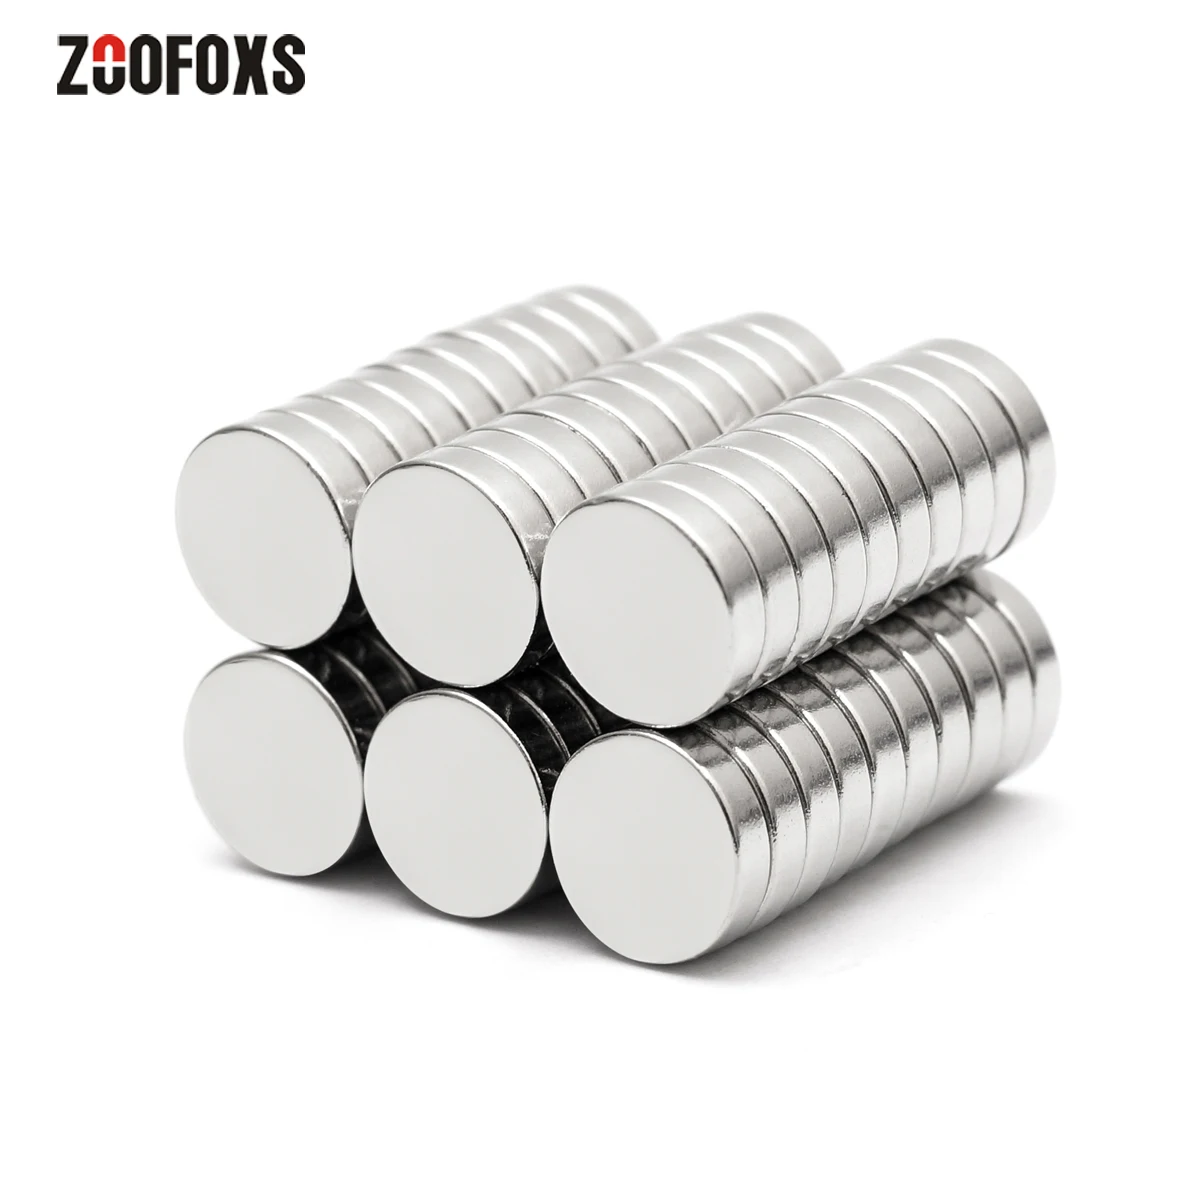 

ZOOFOXS 10x1 10x1.5 10x2 10x3 10x4 10x5 10x6 10x10 10x15 10x20mm Small Round Neodymium Magnets Rare Earth Fridge Magnetic Sheets